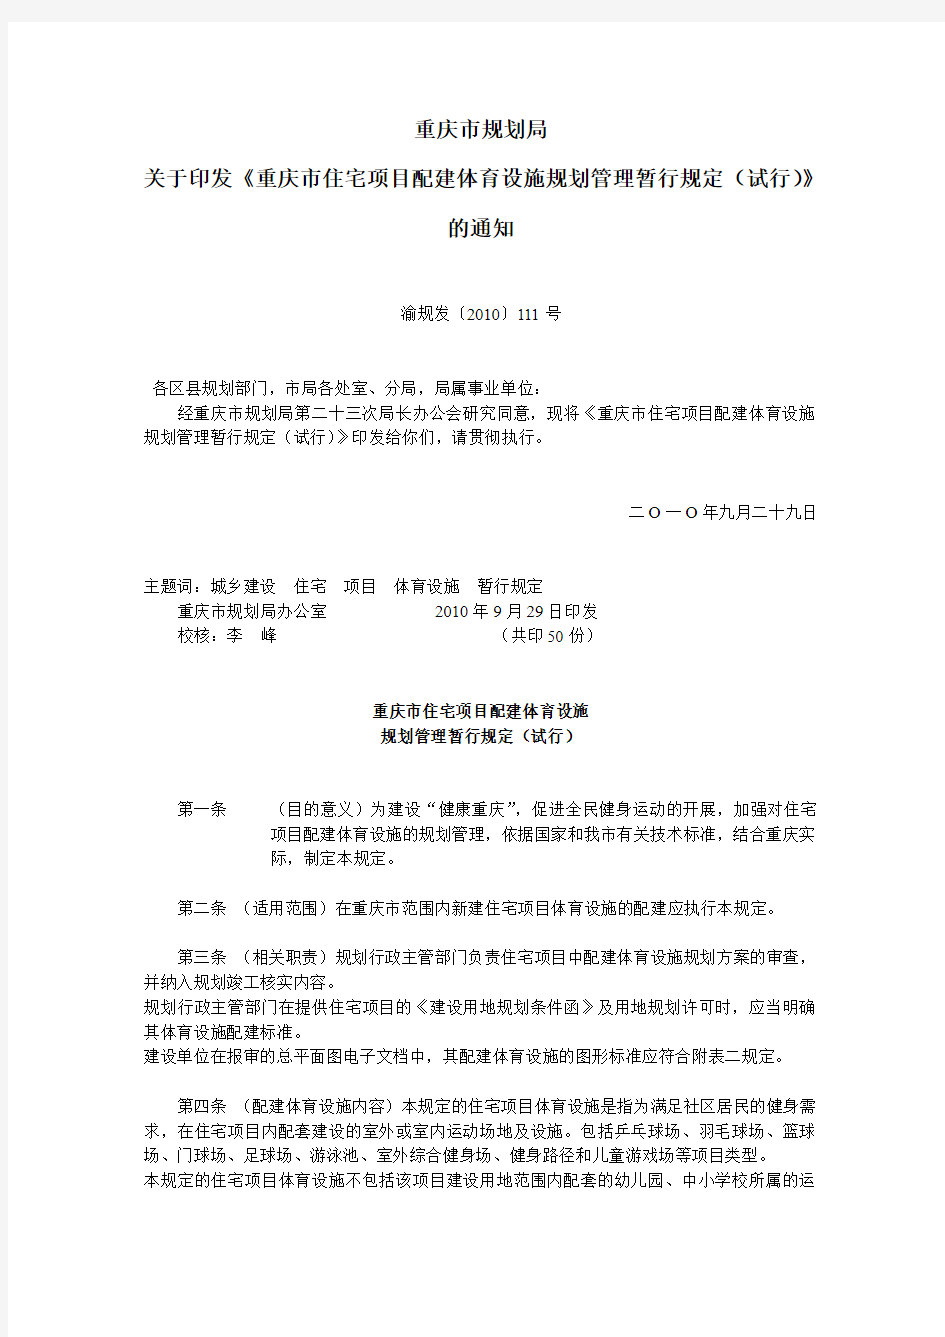 重庆市住宅项目配建体育设施规划管理暂行规定(试行)